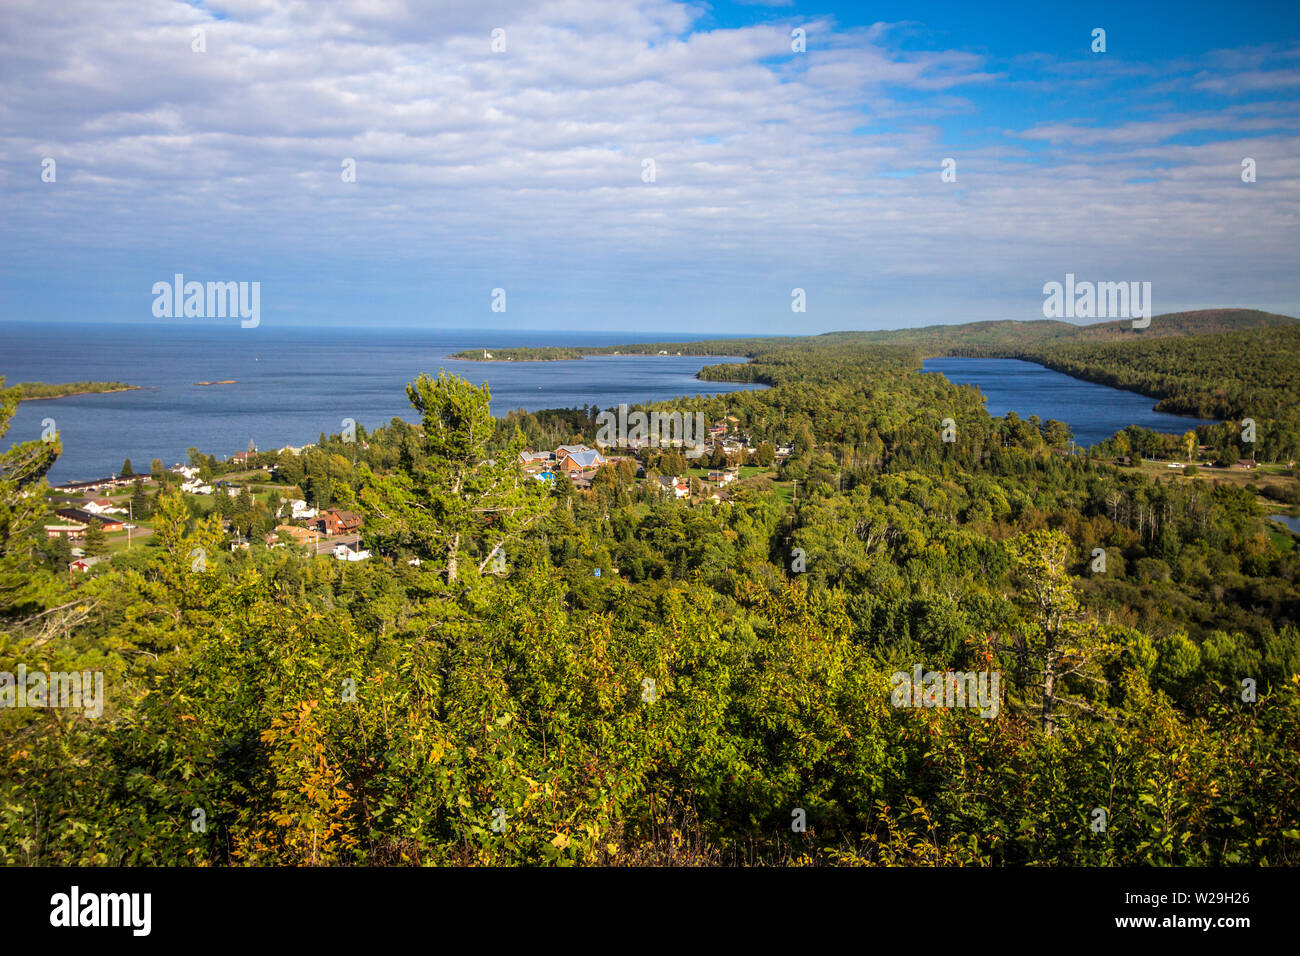 Michigan Copper Harbor. Vue aérienne de la petite ville côtière de port cuivre vu de la montagne Brockway Scenic Drive dans la haute péninsule Banque D'Images